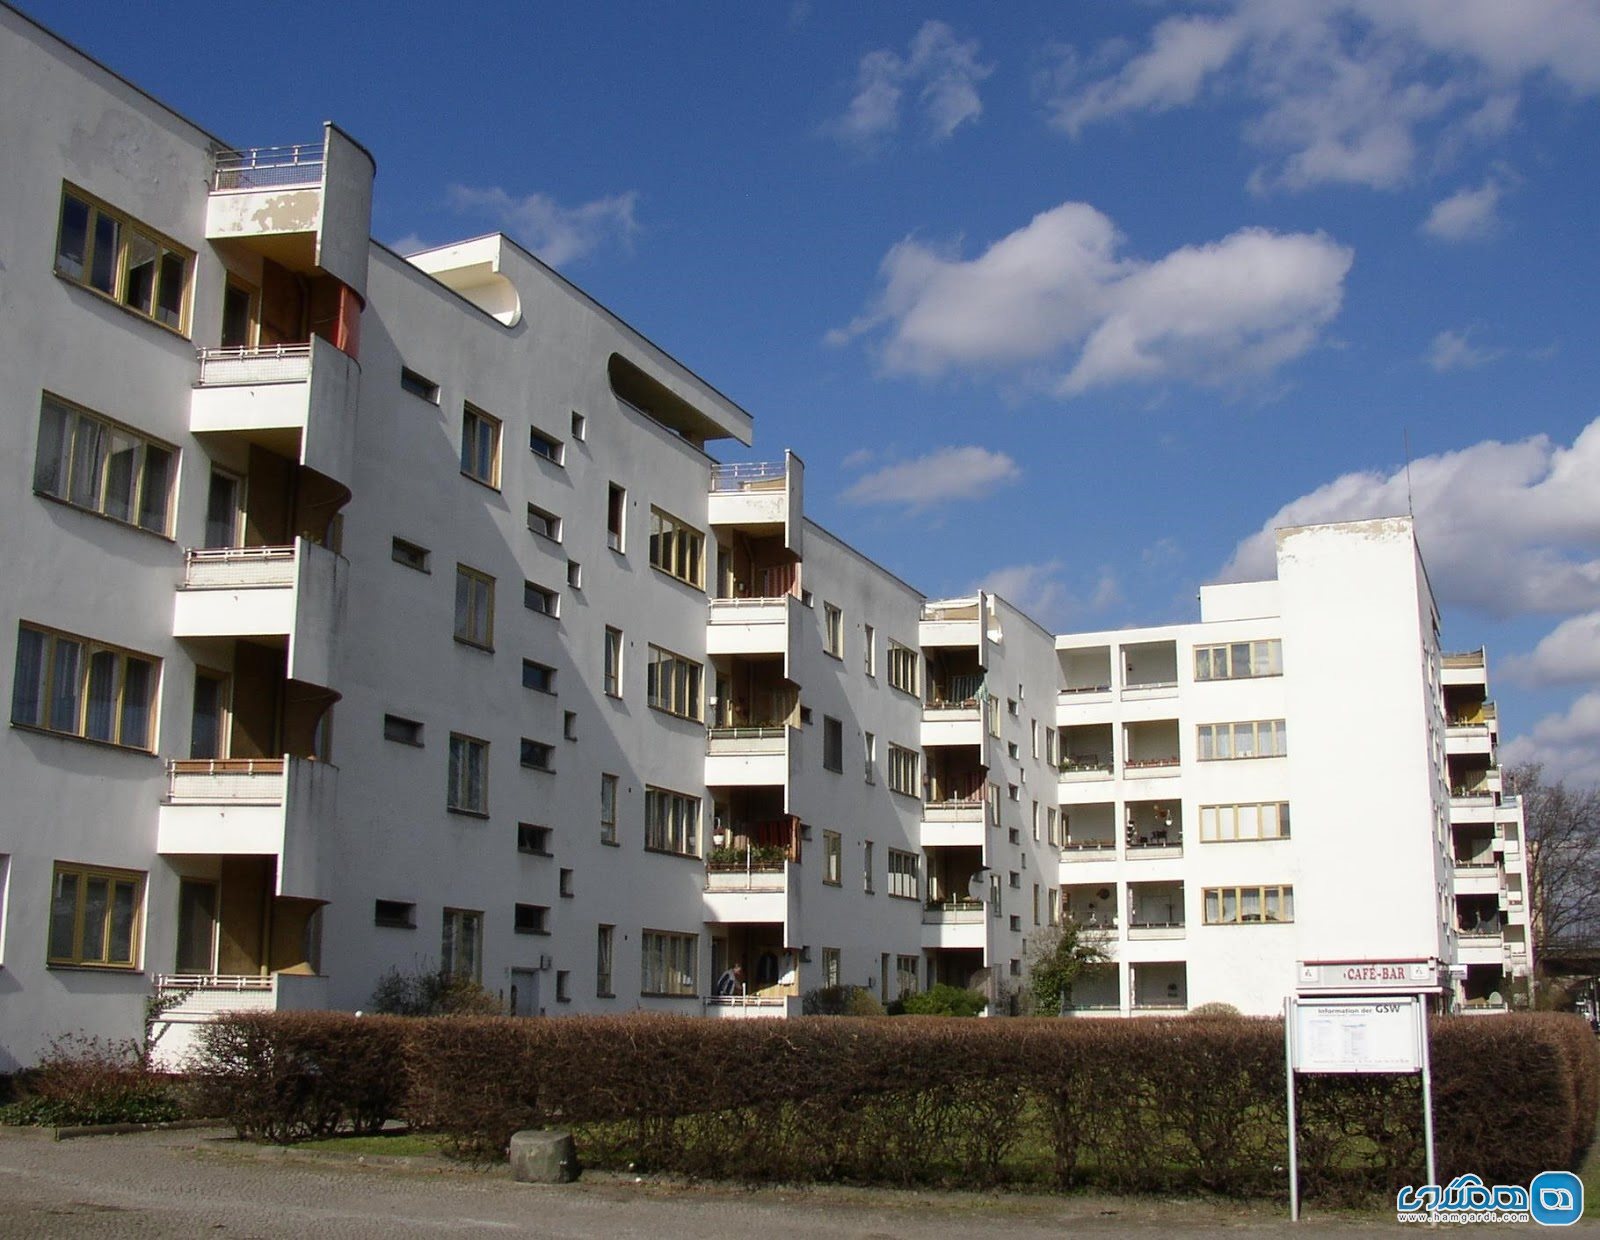 شهرک های مسکونی مدرنیسم Berlin Modernism Housing Estates در برلین آلمان